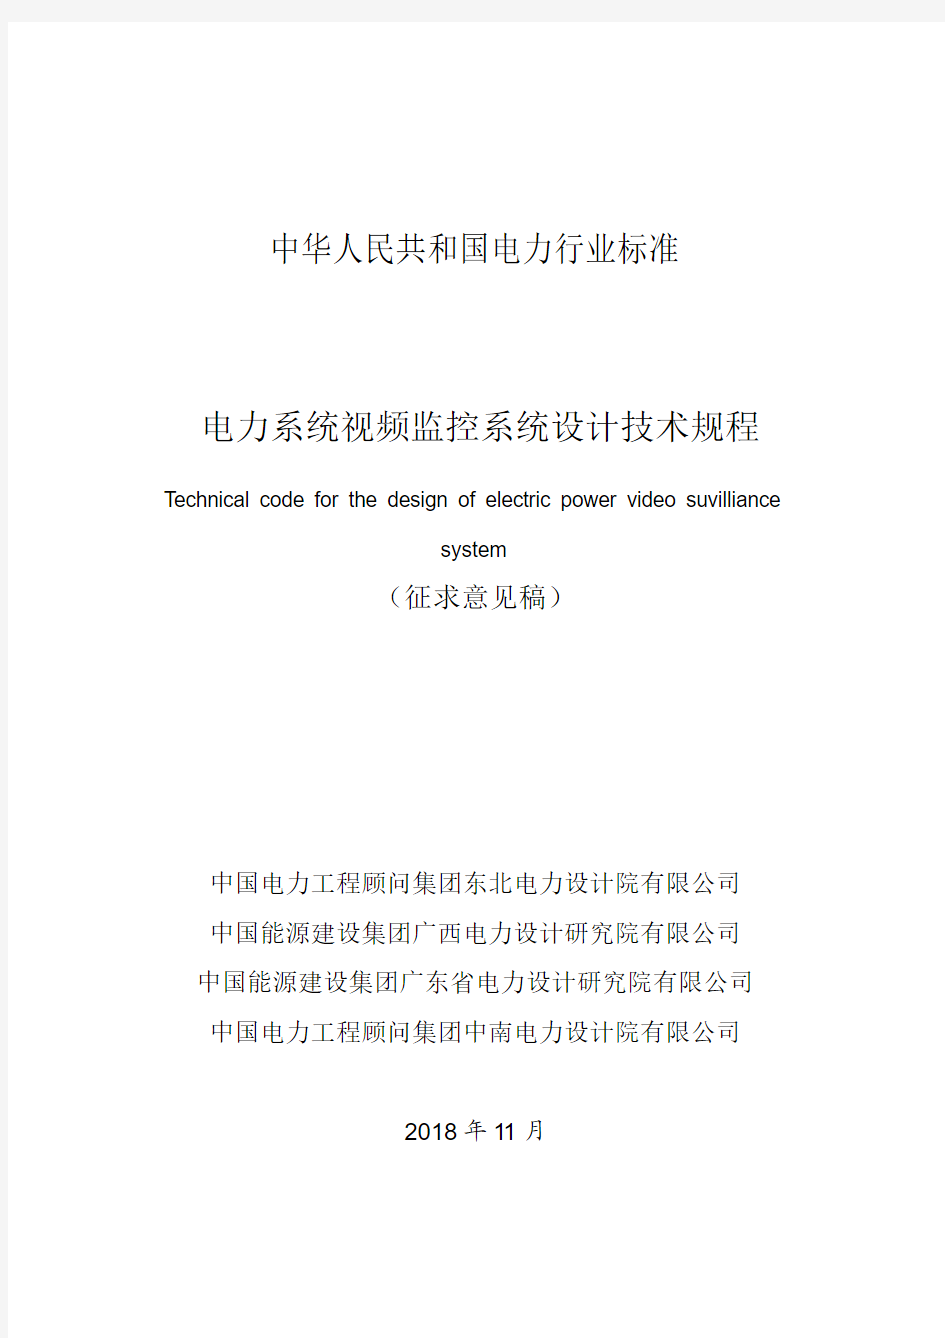 中华人民共和国电力行业标准电力系统视频监控系统设计技术